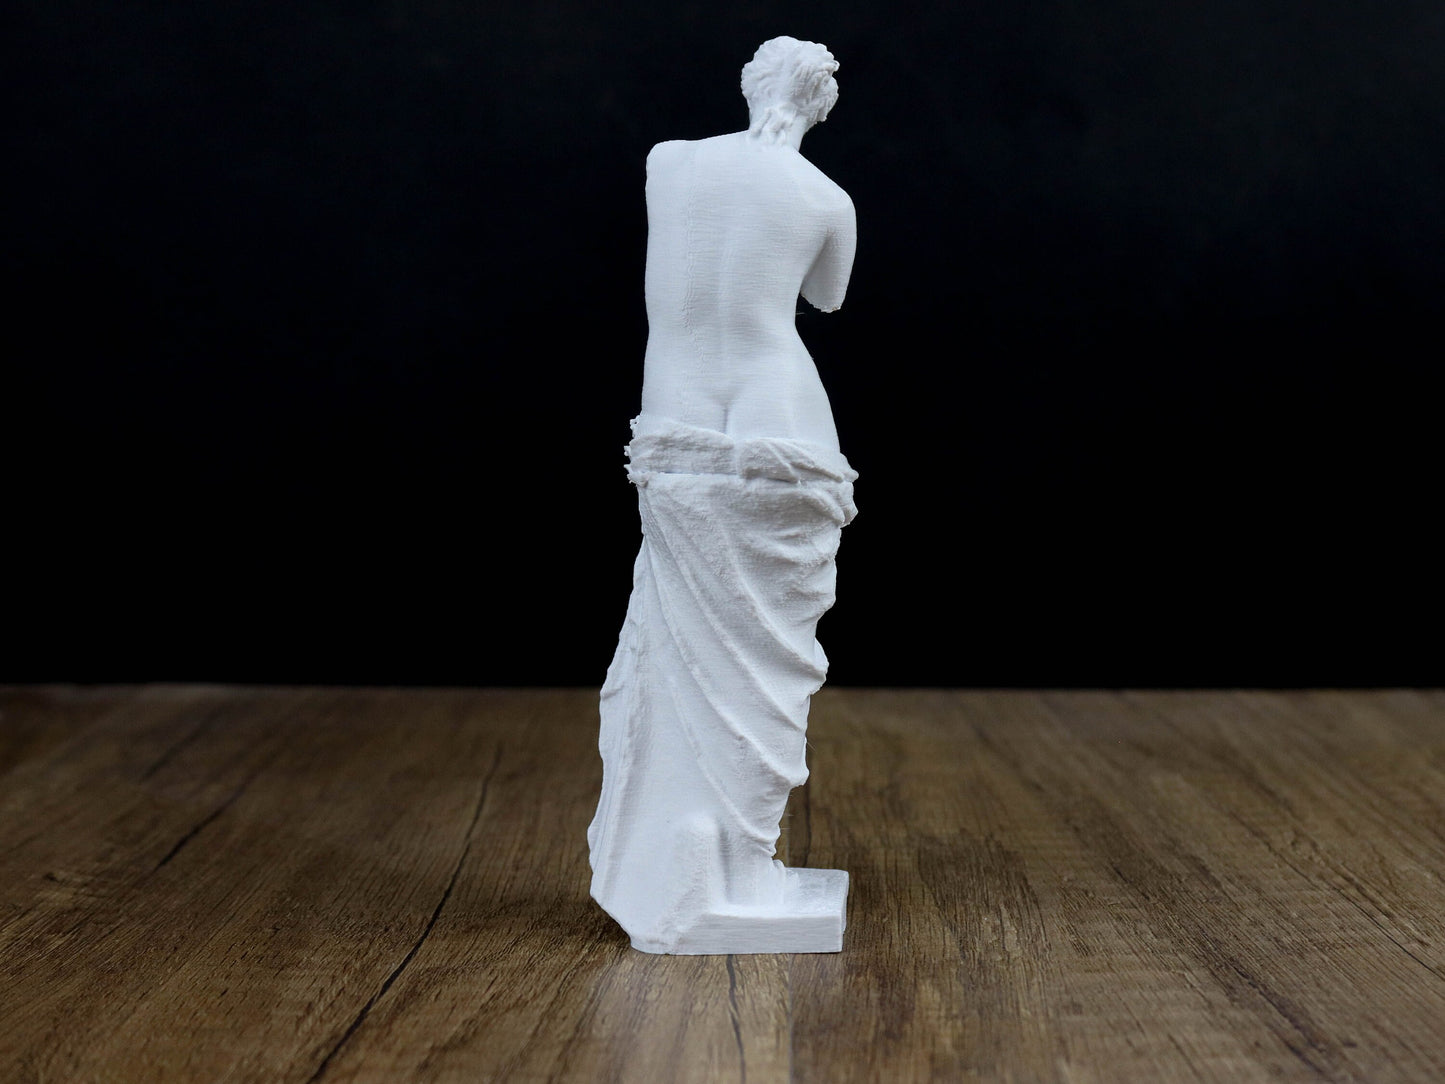 Venus De Milo Statue, Ancient Greek Sculpture showing Aphrodite the Greek Goddess of Love